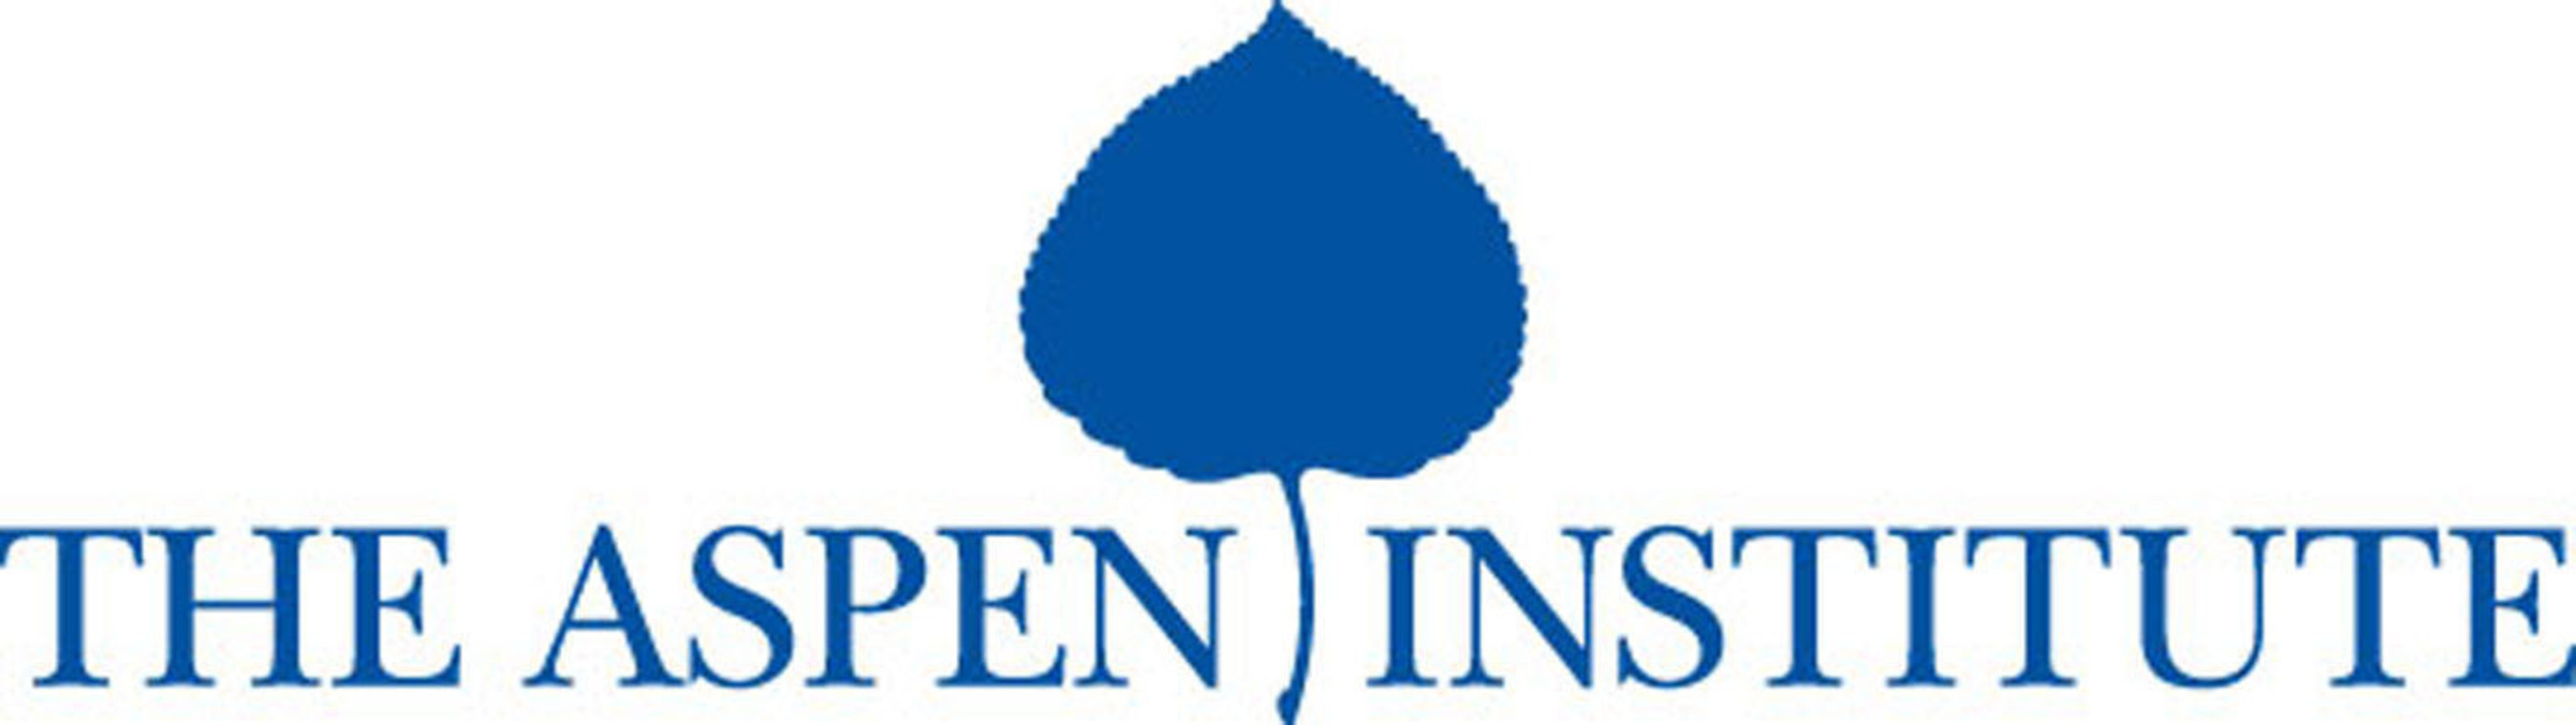 Aspen Institute logo. (PRNewsFoto/The Aspen Institute)